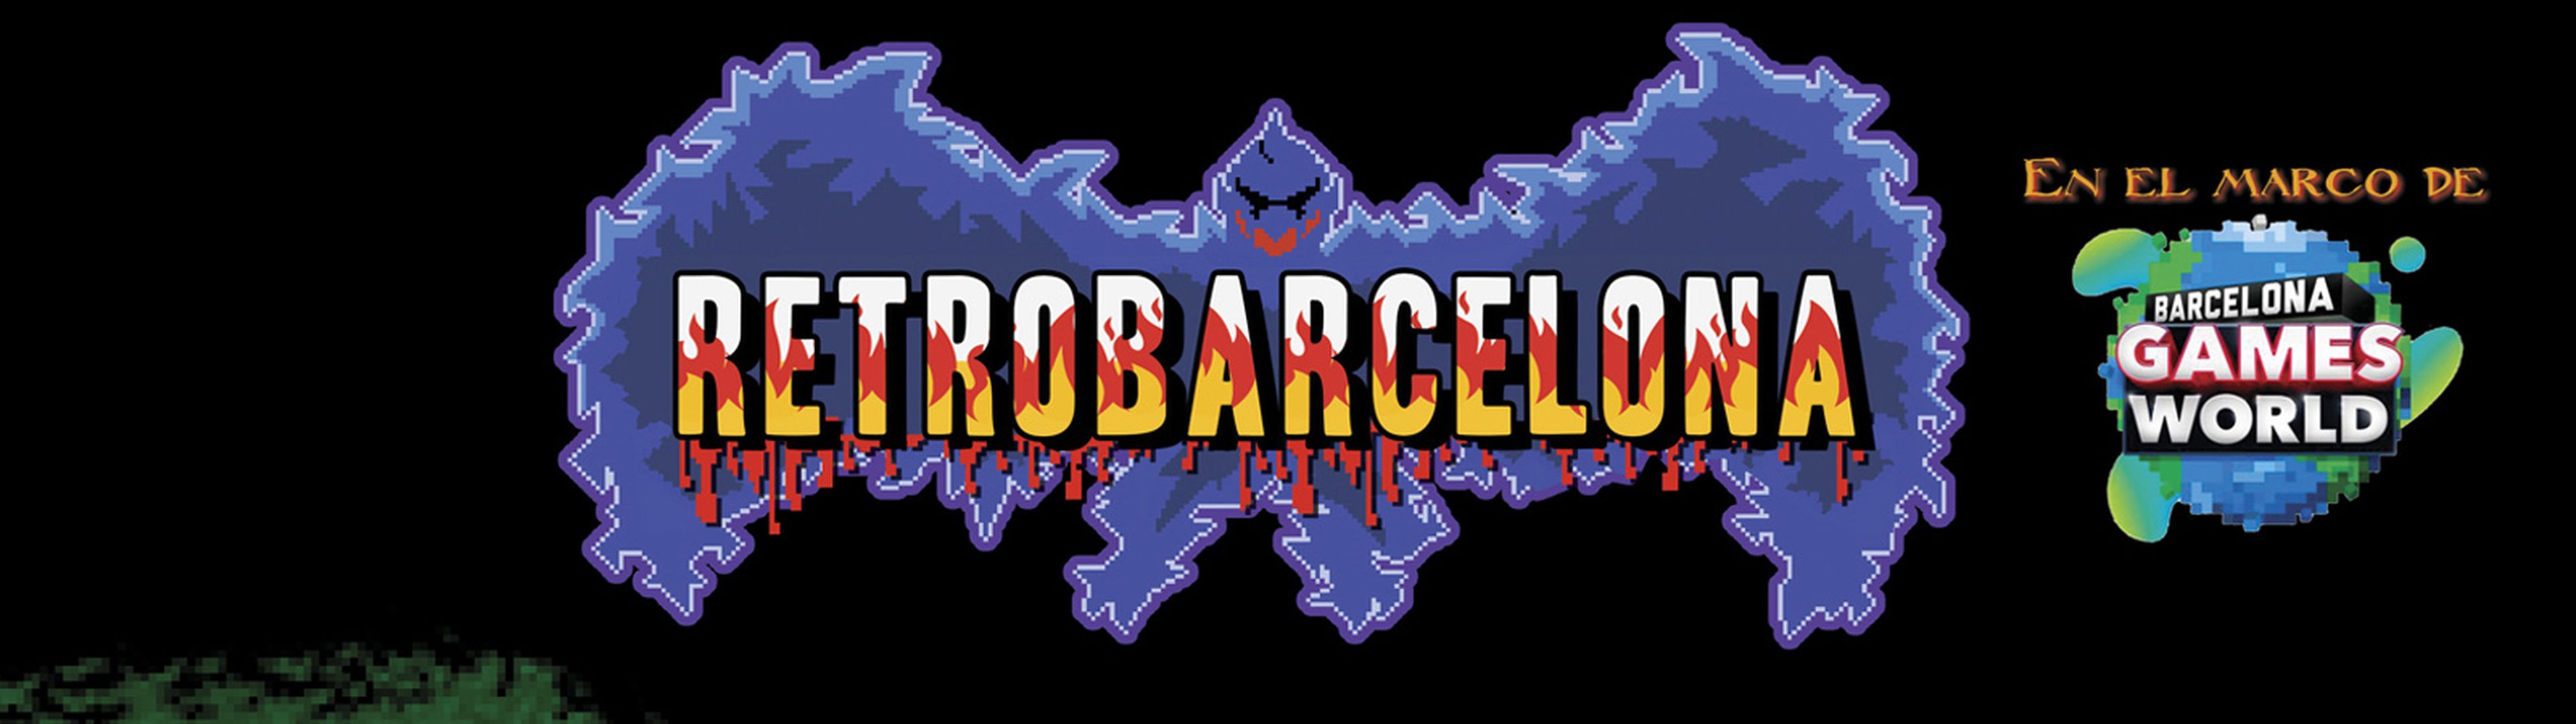 RetroBarcelona 2016 cabecera